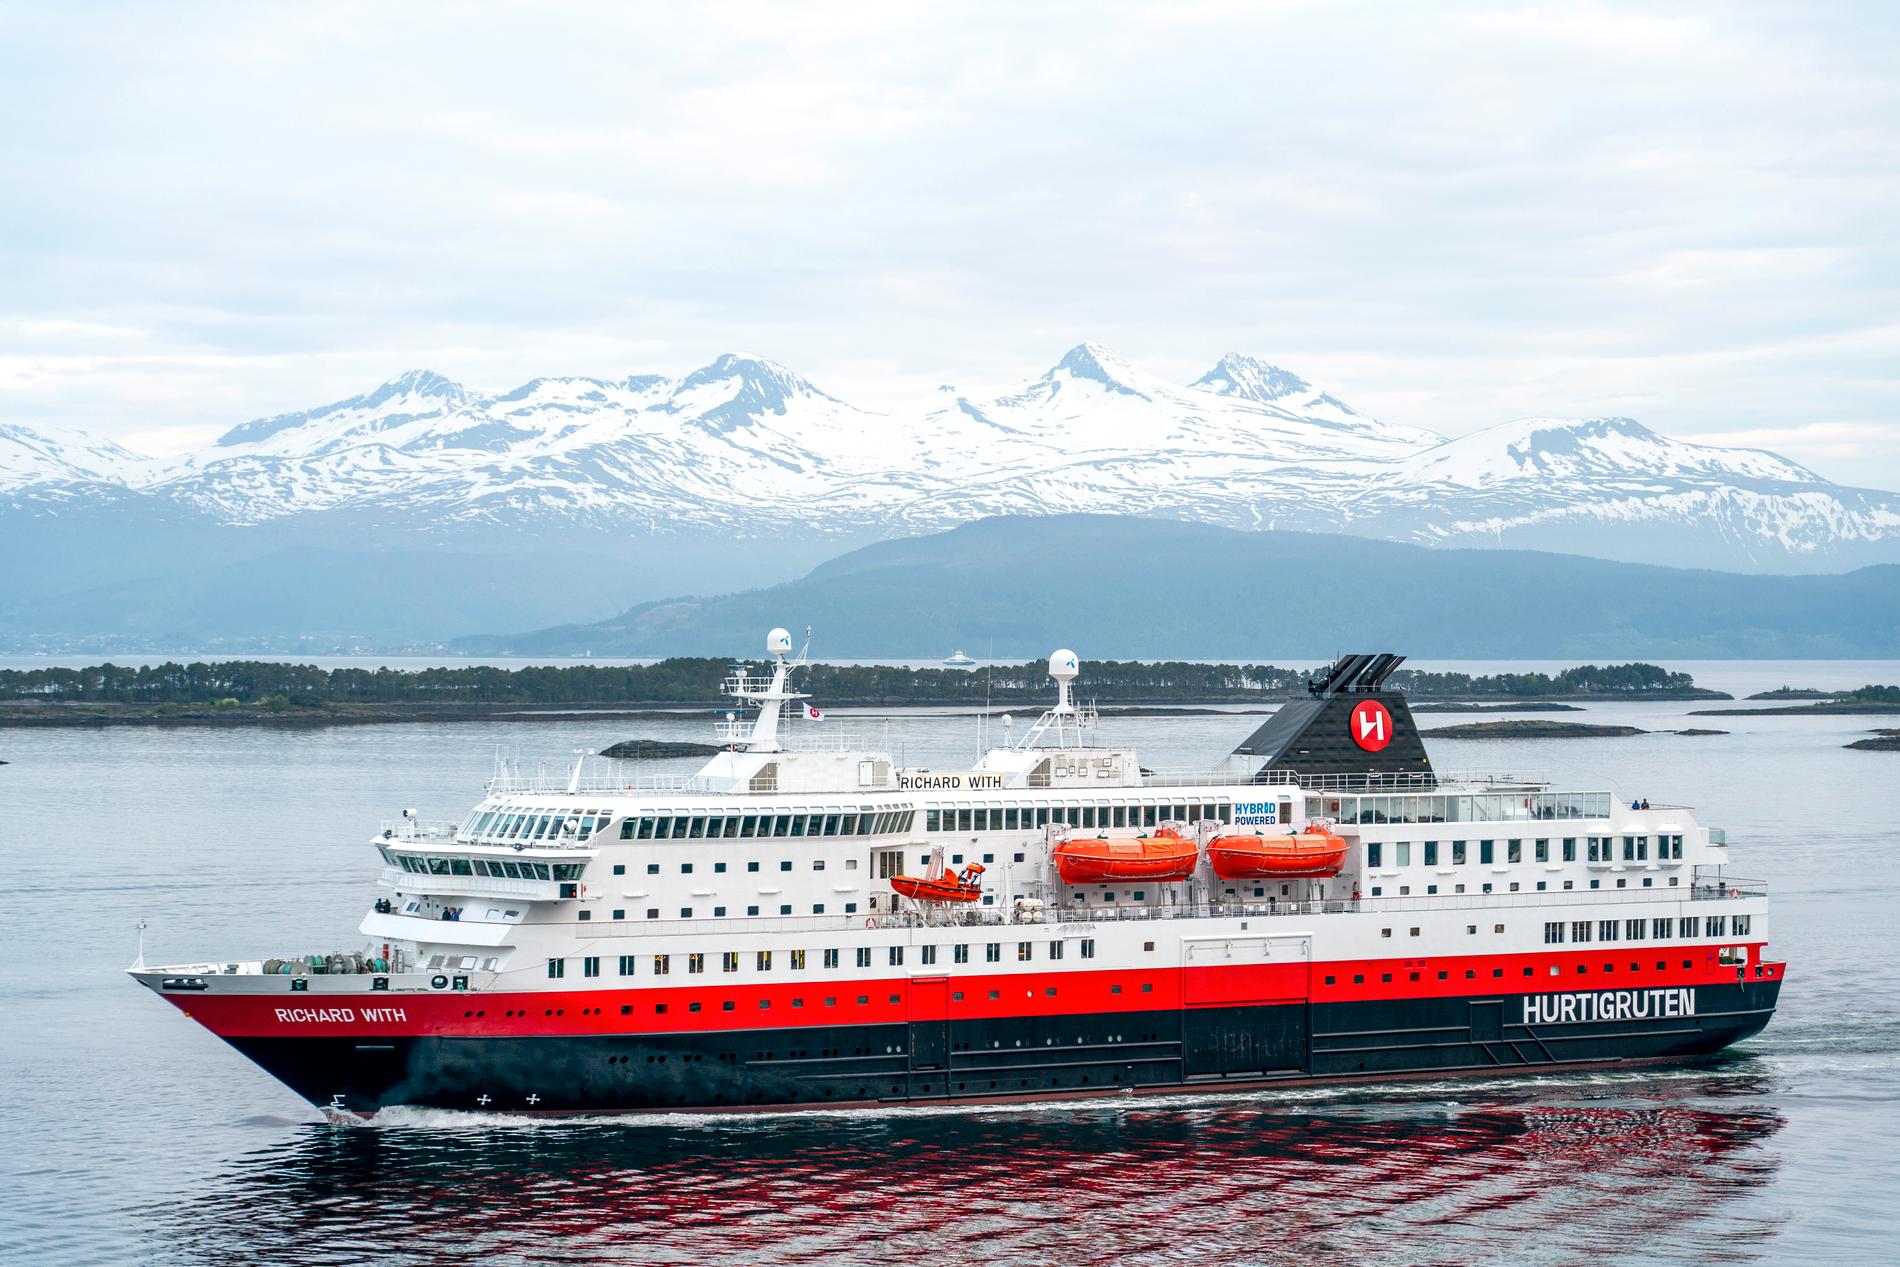 Hurtigruten deficit continues in Q1 – E24